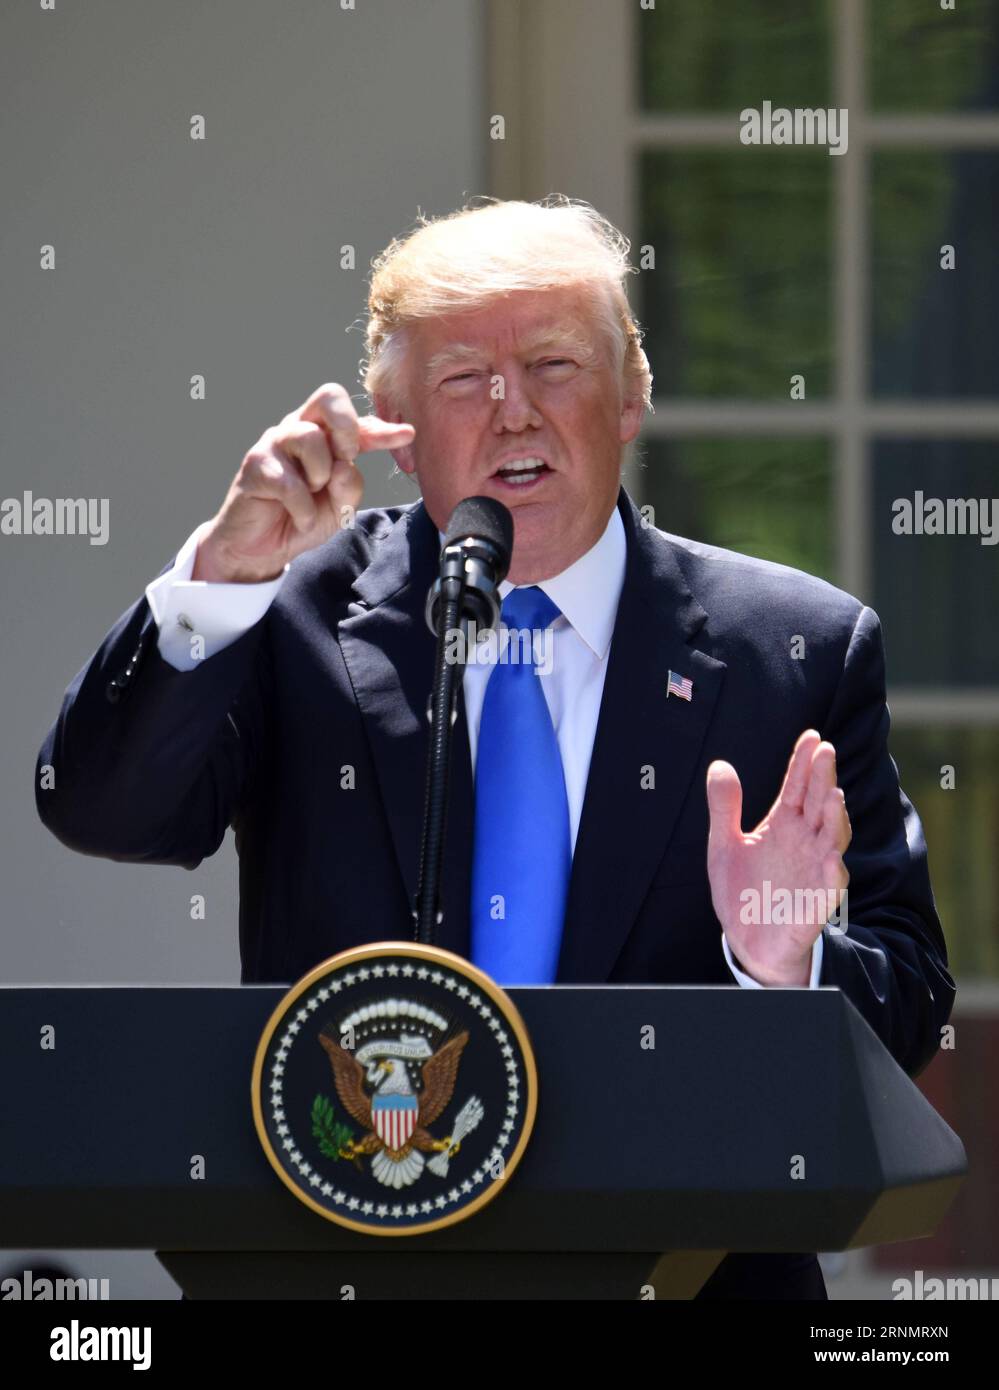 (170609) -- WASHINGTON, 9. Juni 2017 -- US-Präsident Donald Trump spricht während einer gemeinsamen Pressekonferenz mit dem rumänischen Präsidenten Klaus Iohannis (nicht im Bild) im Weißen Haus in Washington D.C., USA, am 9. Juni 2017. Während der Pressekonferenz warf US-Präsident Donald Trump Katar vor, den Terrorismus auf einem sehr hohen Niveau zu finanzieren, und forderte das arabische Golf-Land auf, die Finanzierung einzustellen. ) US-WASHINGTON D.C.-TRUMP-PRESSEKONFERENZ-KATAR-ANKLAGE YinxBogu PUBLICATIONxNOTxINxCHN Washington 9. Juni 2017 US-Präsident Donald Trump spricht während einer gemeinsamen Pressekonferenz W Stockfoto